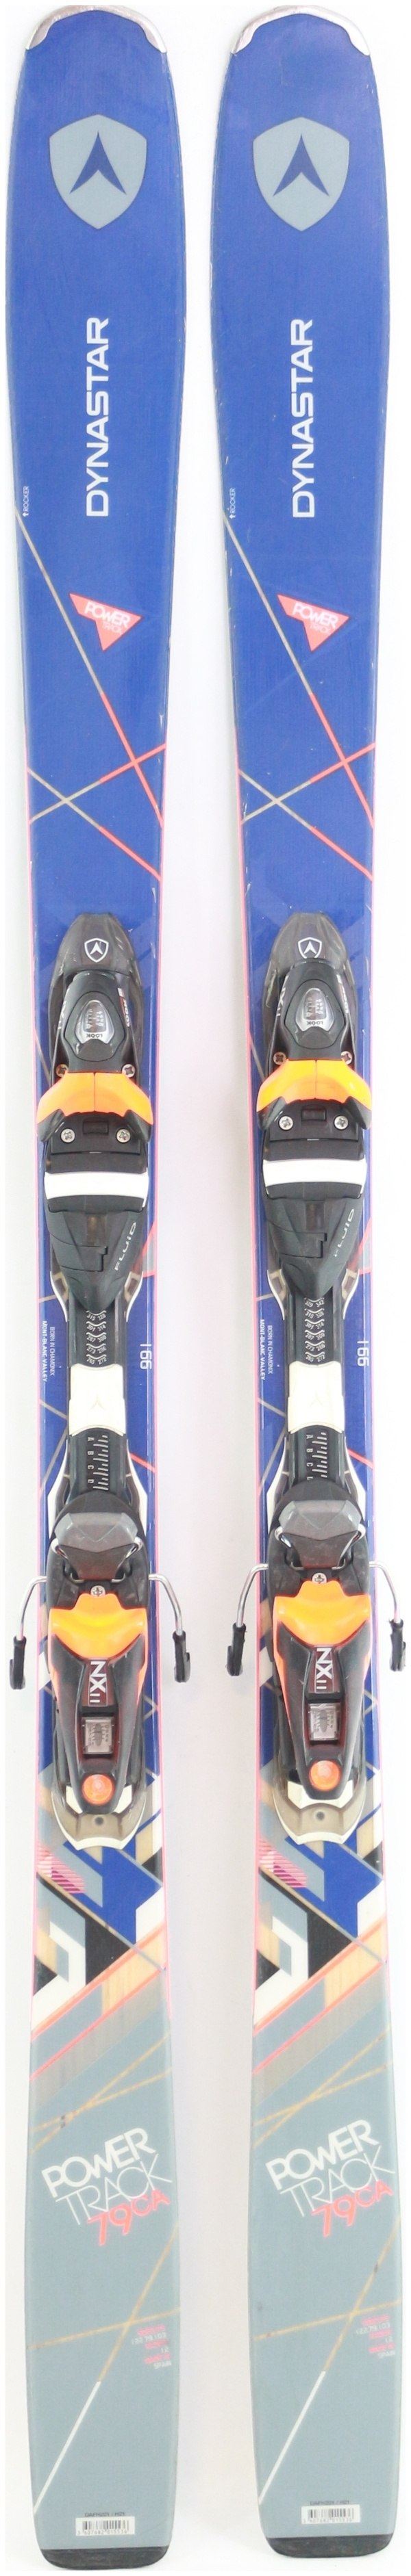 2017, Dynastar, Powertrack 79 CA Fluid Skis with Look NX 11 Fluid Bindings  Used Demo Skis 166cm